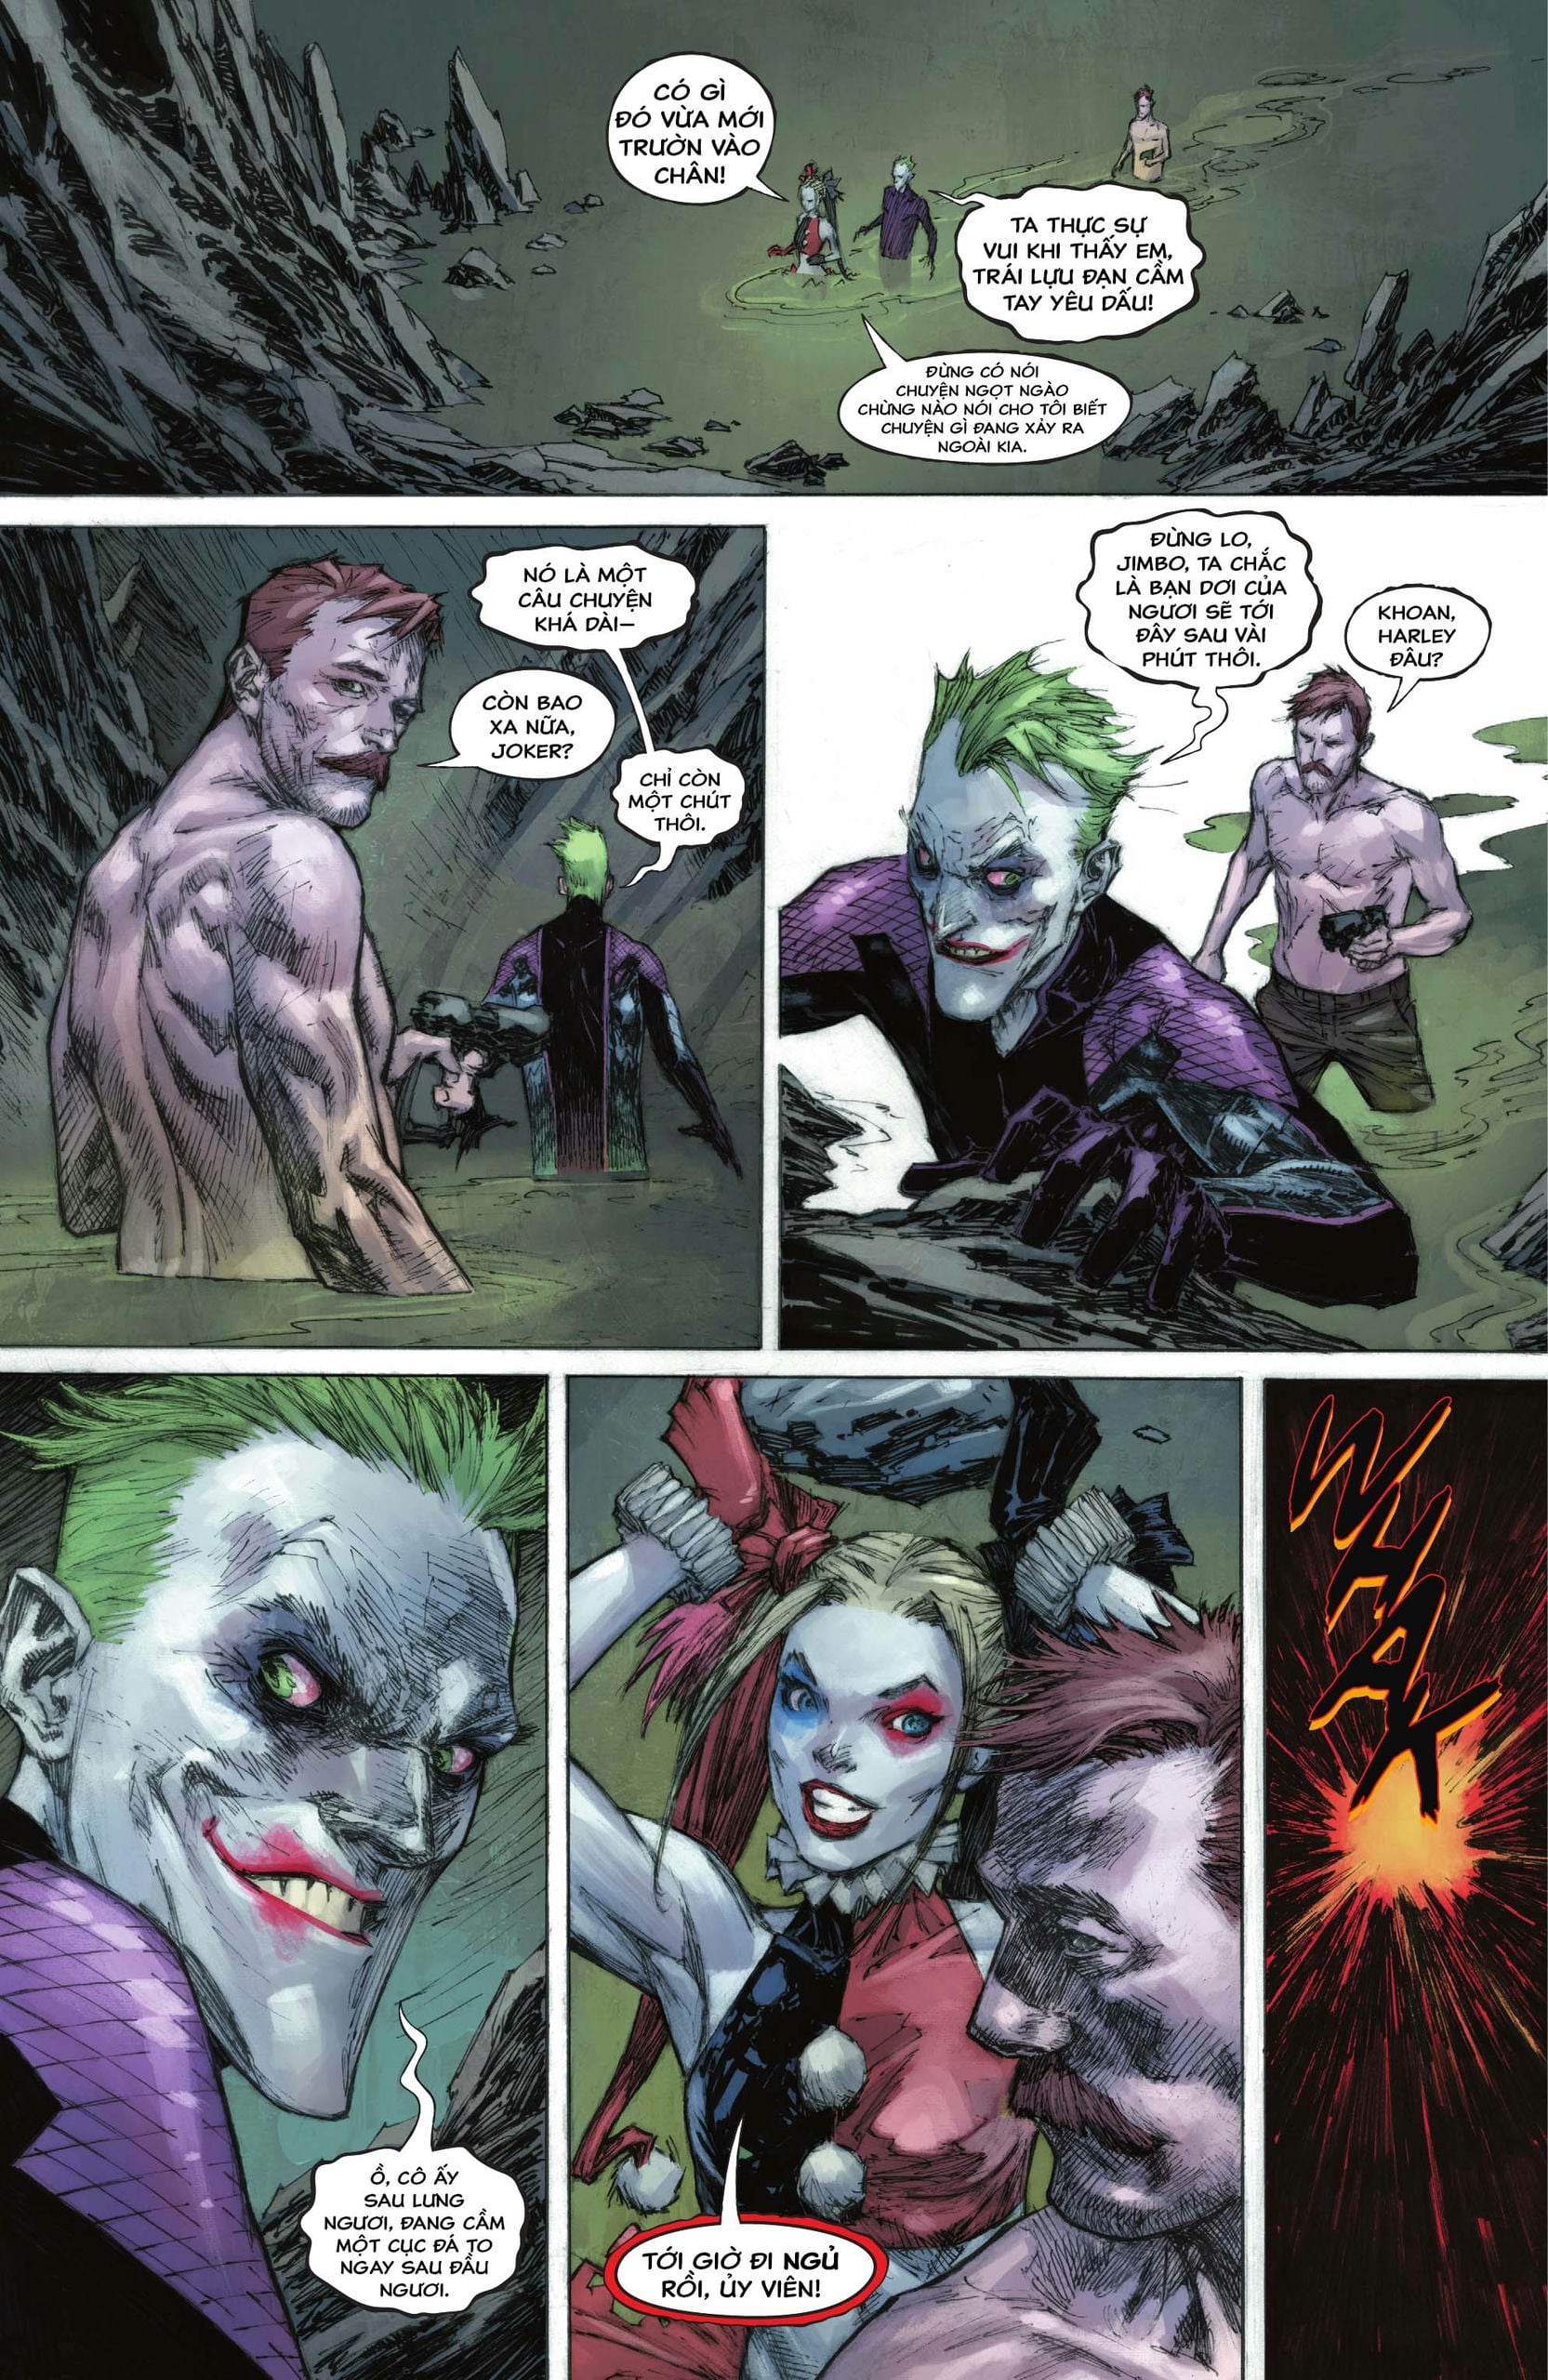 https://langgeek.net/wp-content/webpc-passthru.php?src=https://langgeek.net/wp-content/uploads/2023/05/Batman-_-The-Joker-The-Deadly-Duo-2022-006-020.jpg&nocache=1